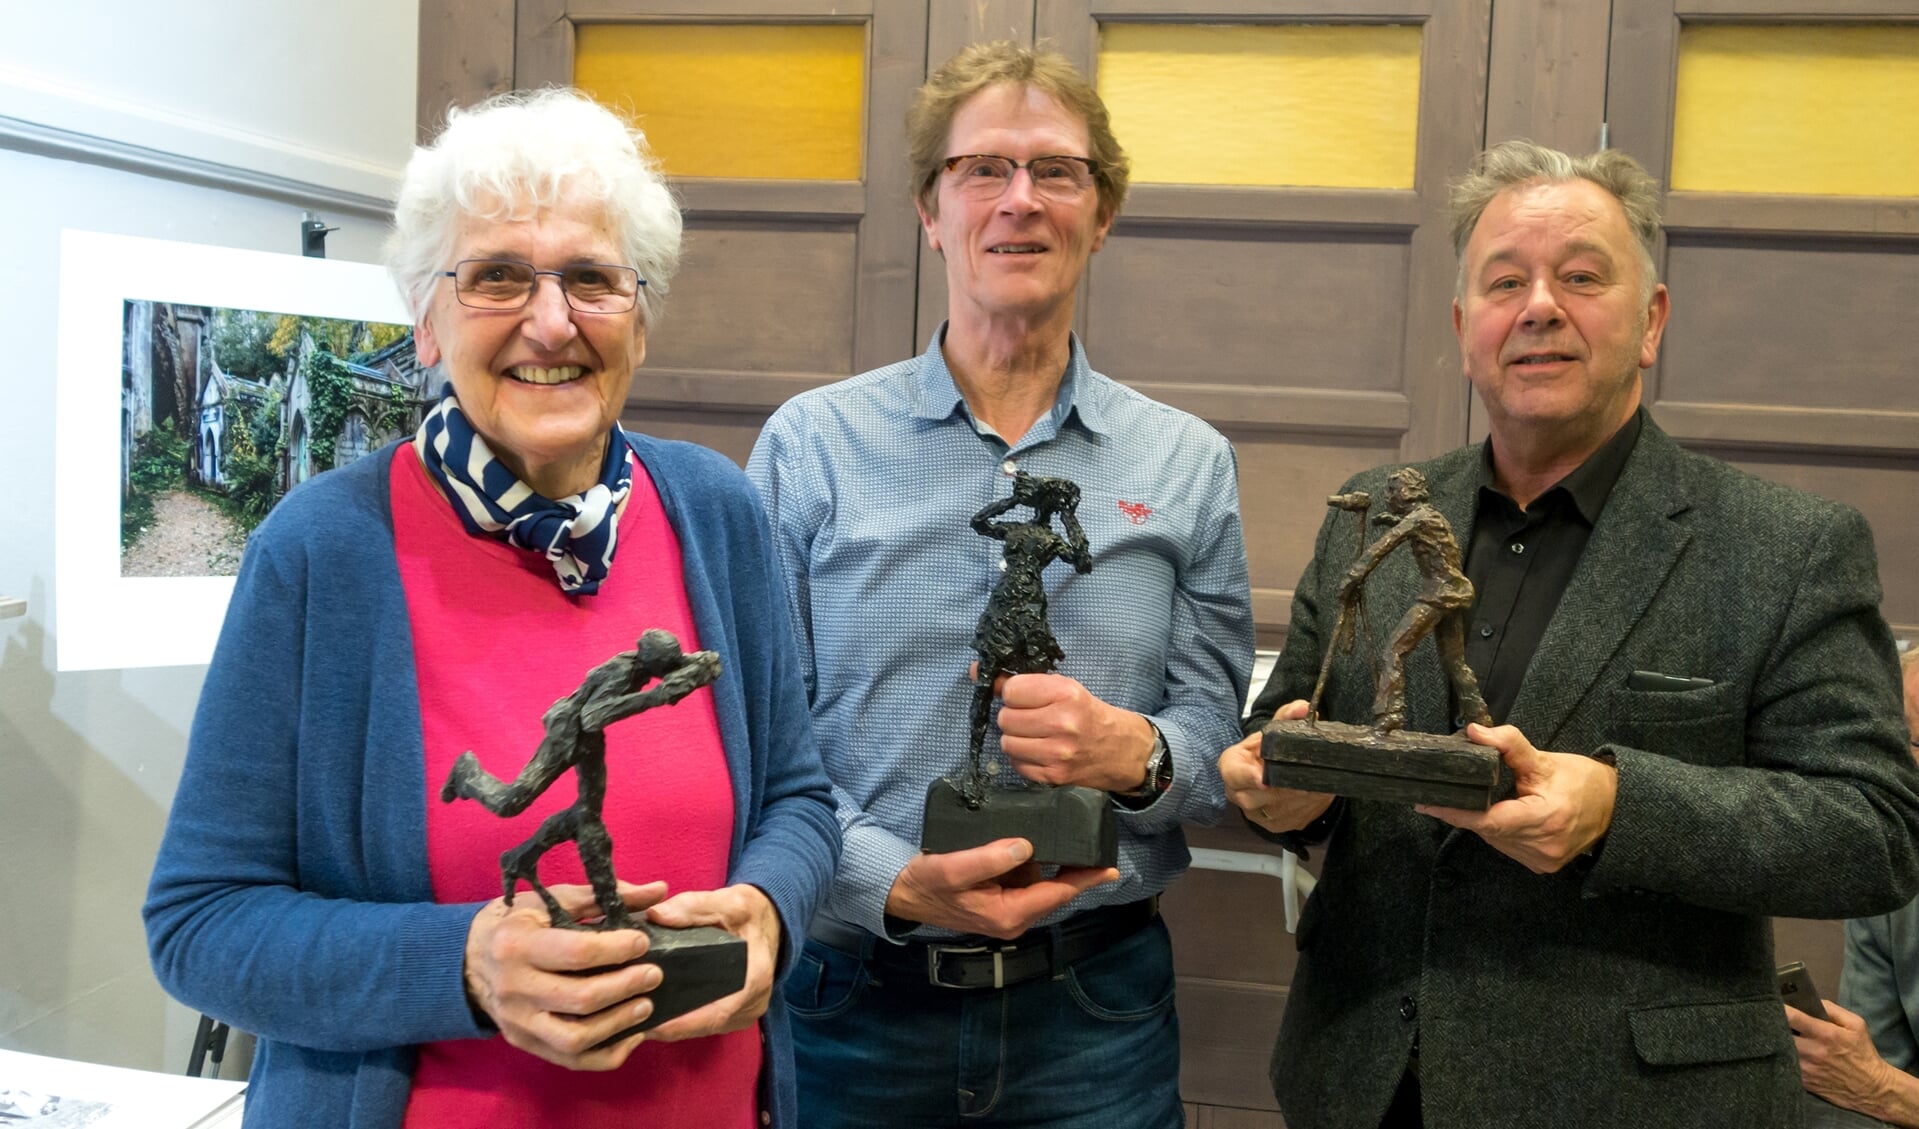 Rarekiek winnaars Gerda Helmsing, Leo van Kassel en Jaap Peeman. (foto: Ton van der Laan)